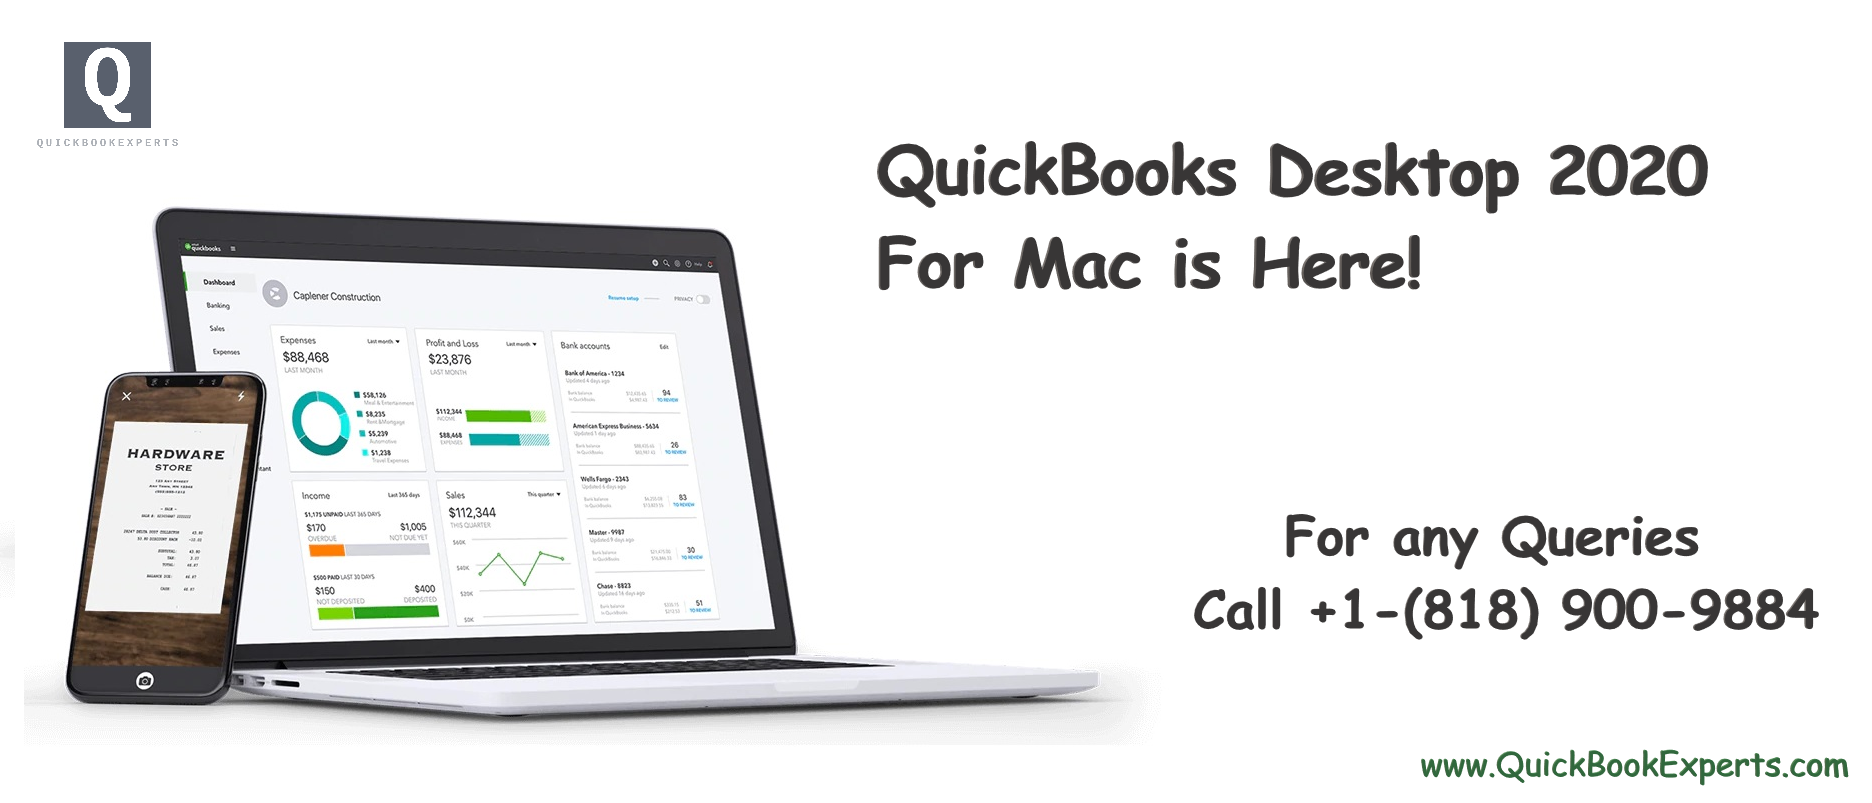 how to activate quickbooks mac 2019